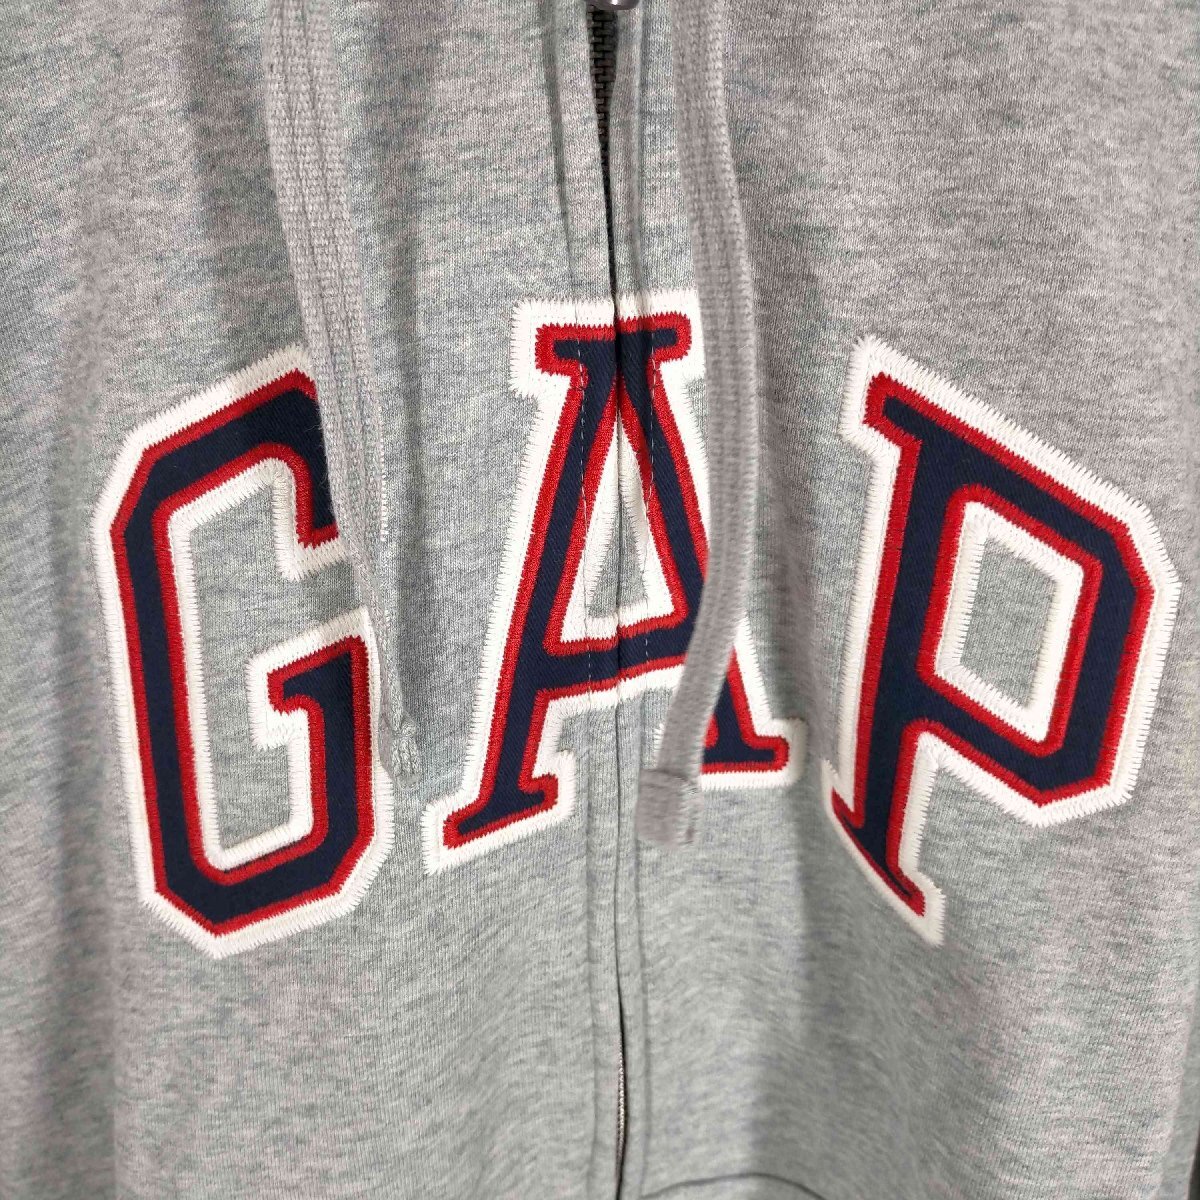 Gap(ギャップ) GAPロゴ カーボナイズド フレンチテリー フルジップ パーカー メンズ import 中古 古着 0907_画像5